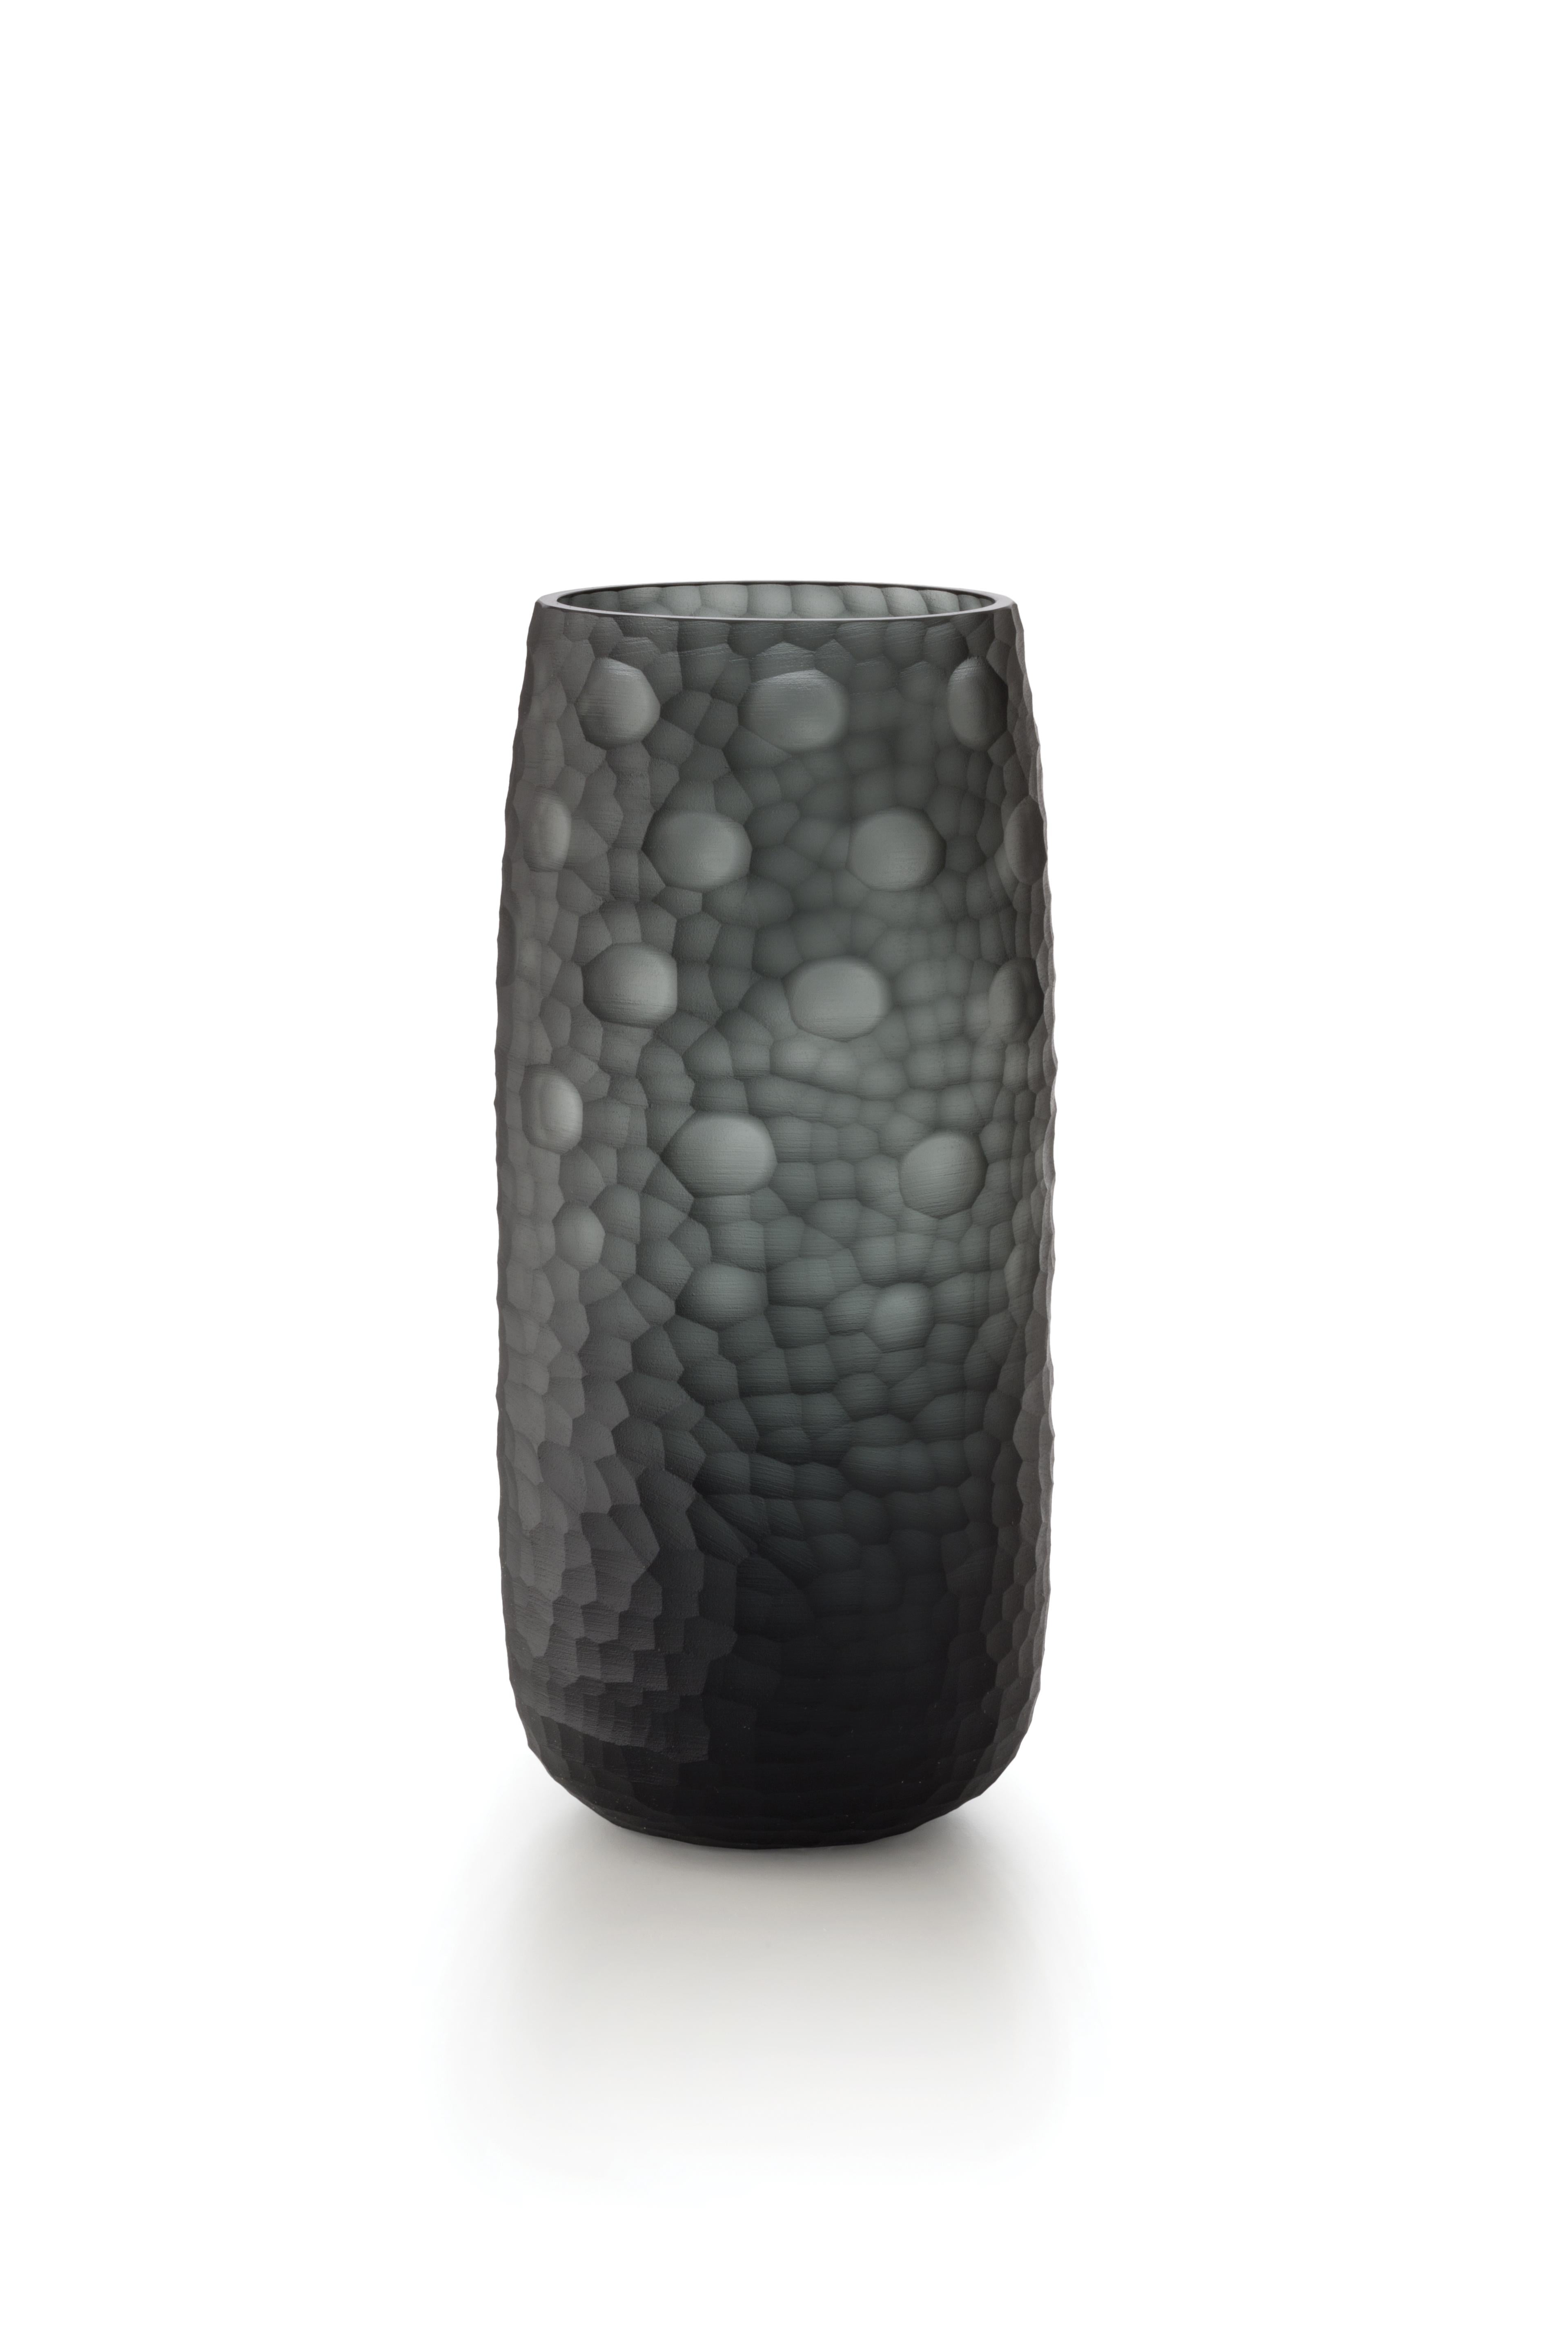 Gray (D6055) Medium Battuti Vase in Murano Glass by Salviati